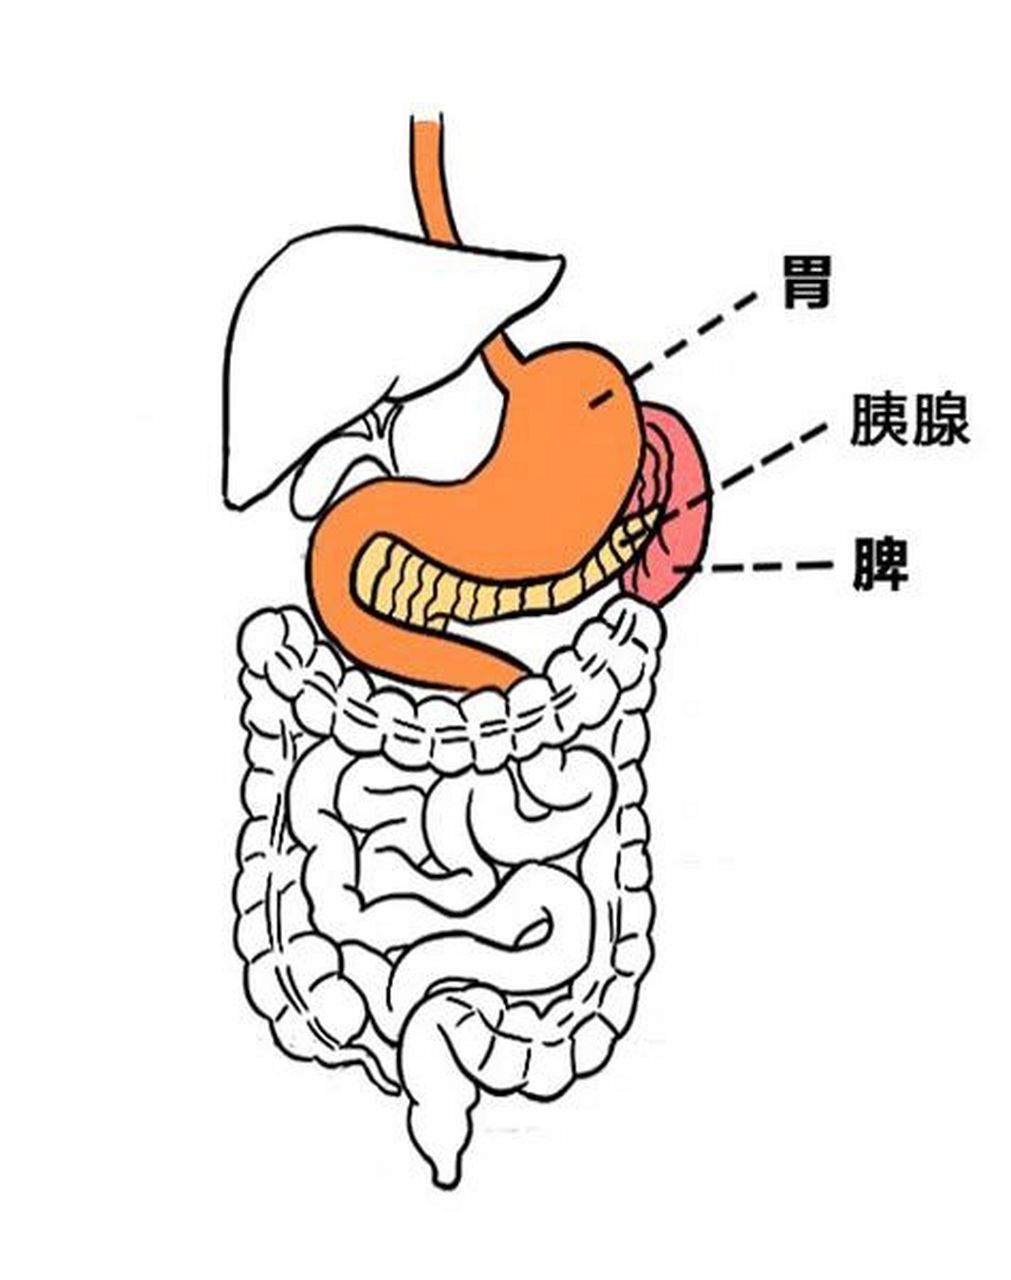 胰腺和脾脏的位置图片图片